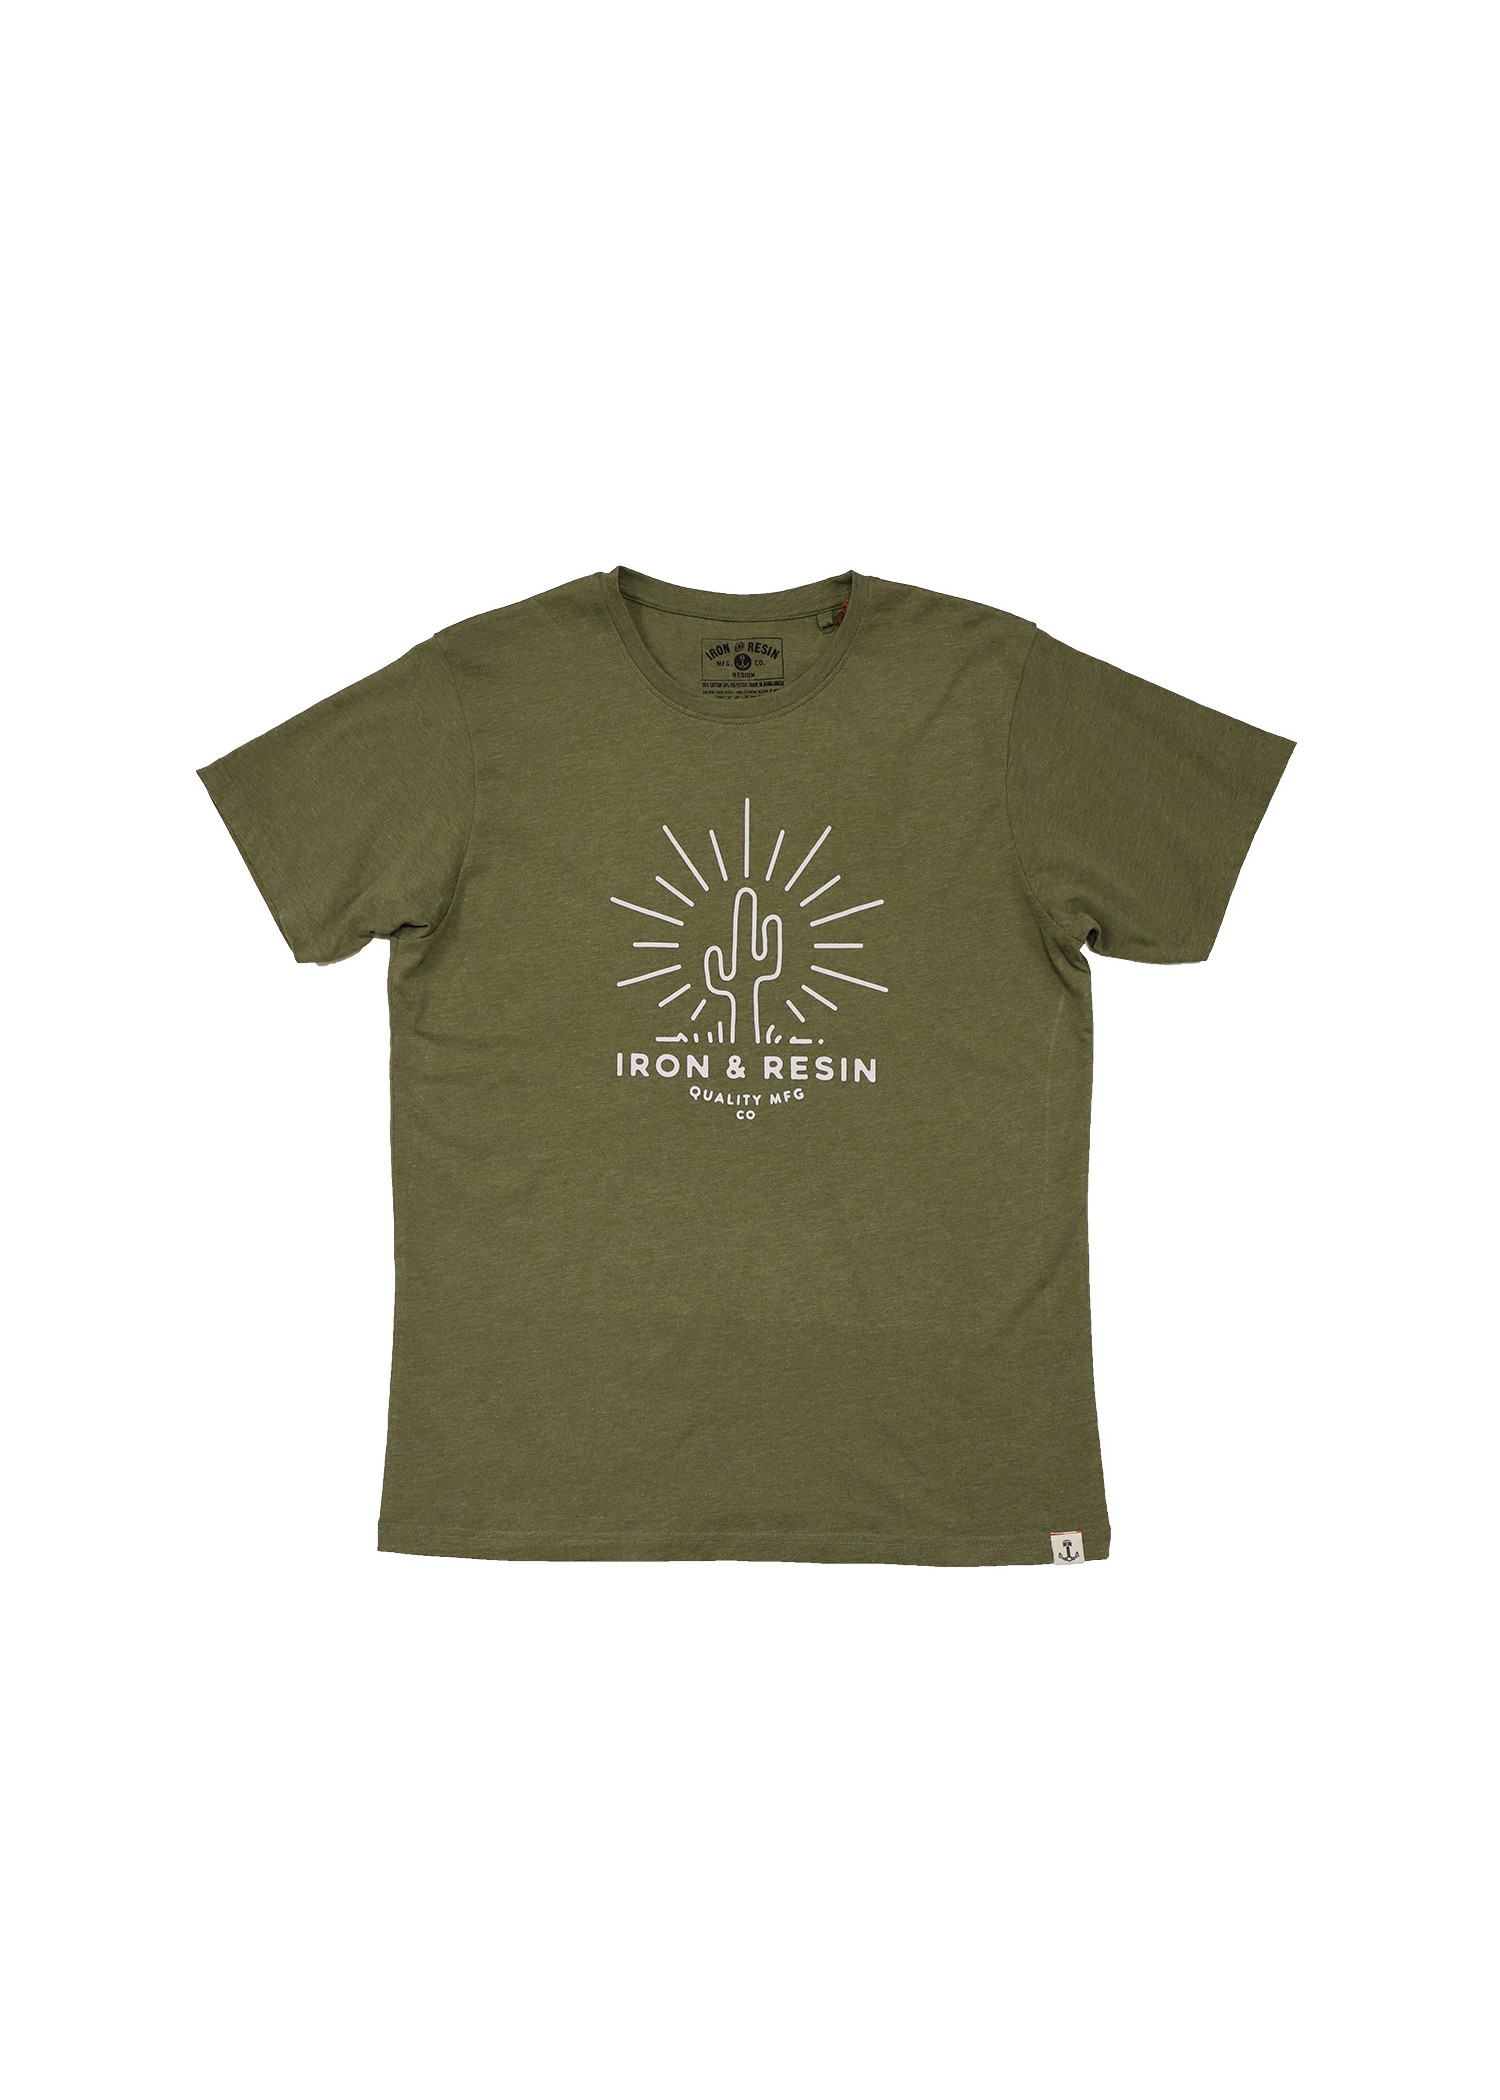 Mesa - T-shirt textile homme - Produits a traiter